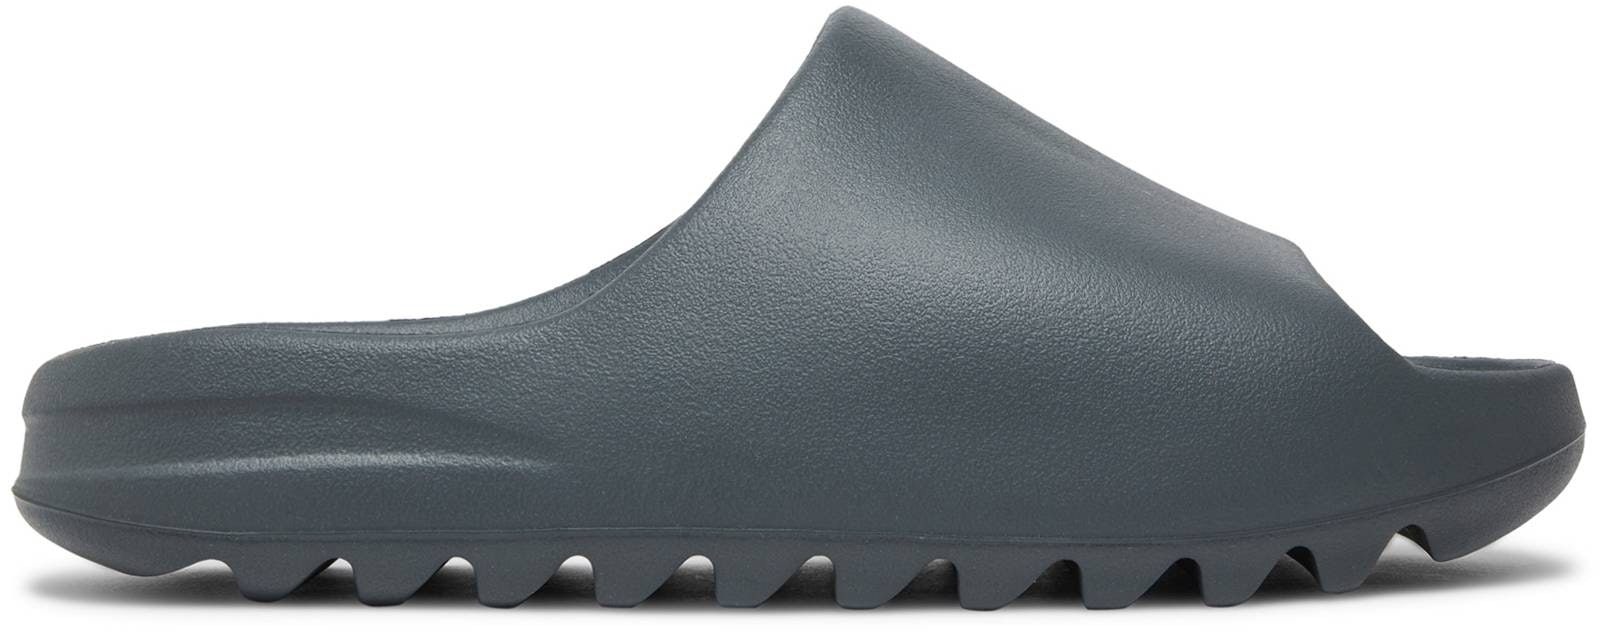 adidas Yeezy Slides 'Slate Grey' ID2350 Novelship